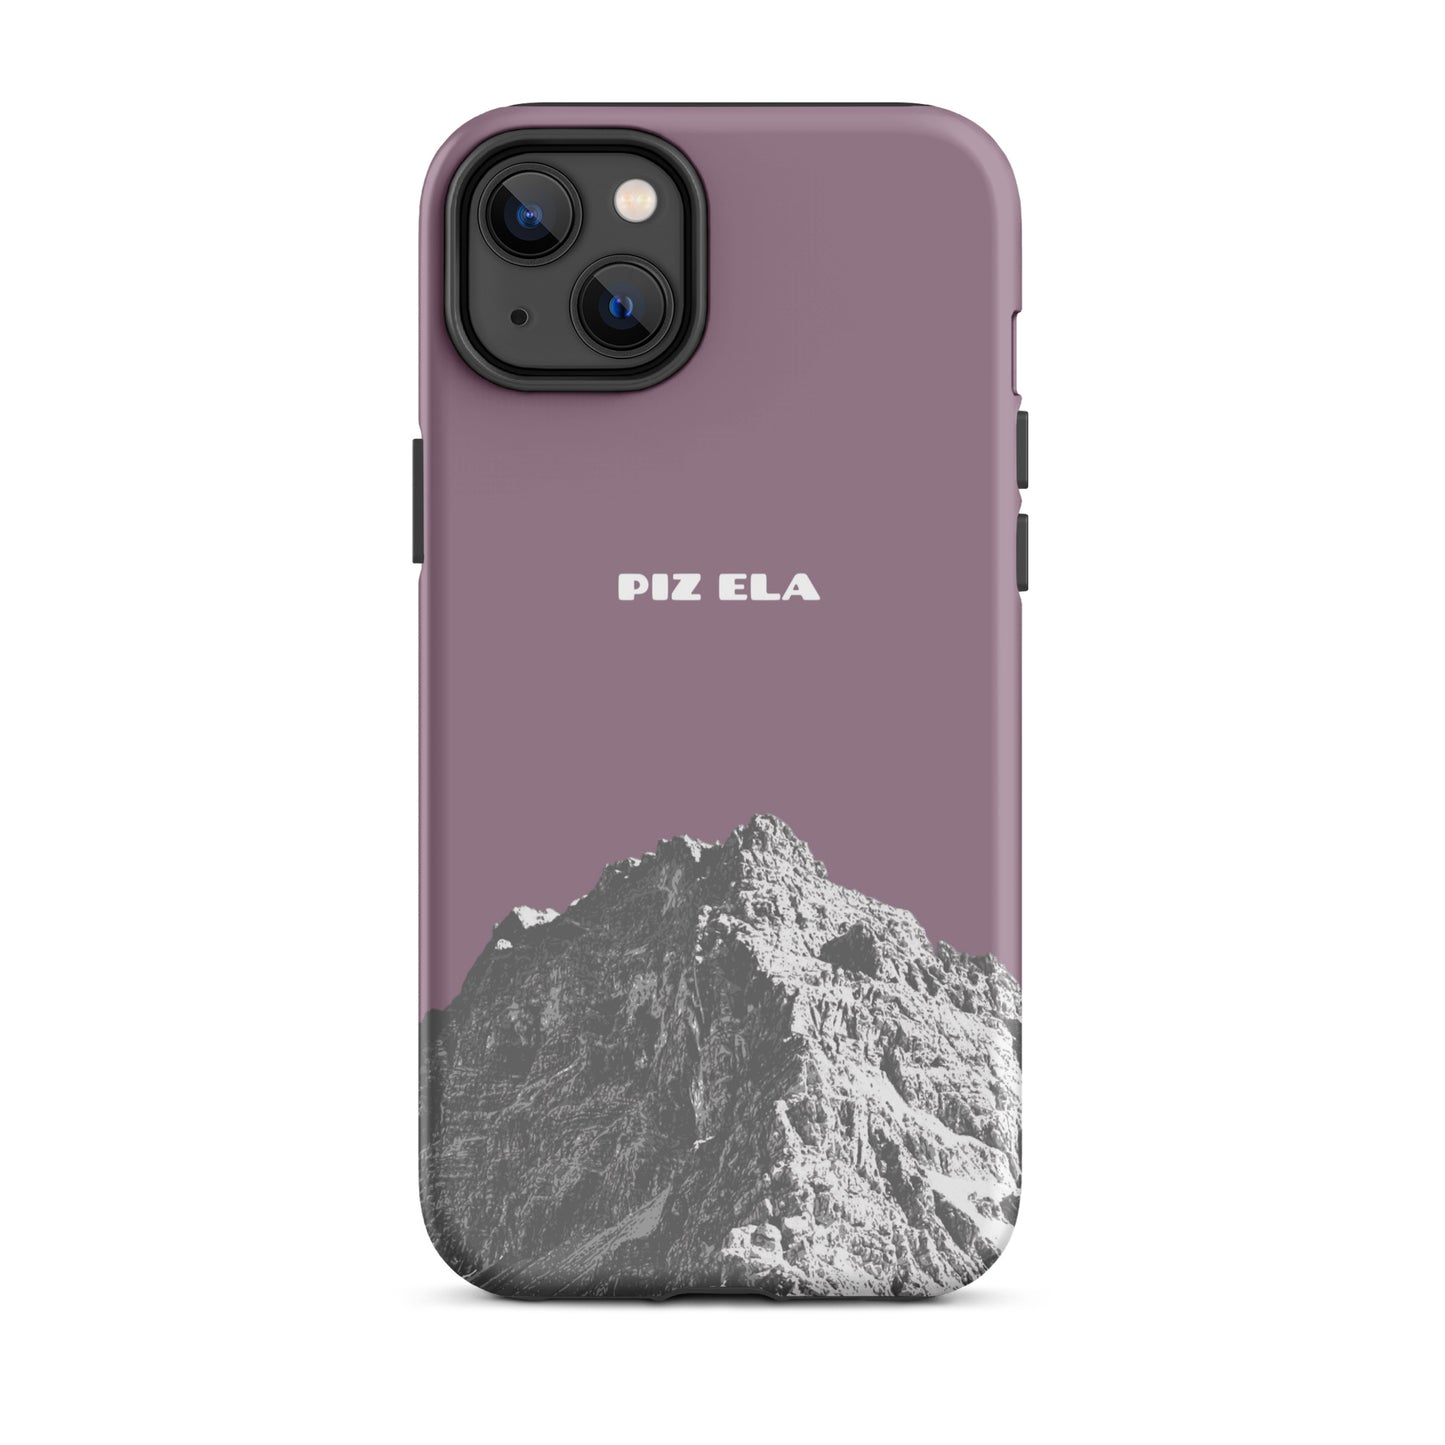 iPhone Case - Piz Ela - Pastellviolett